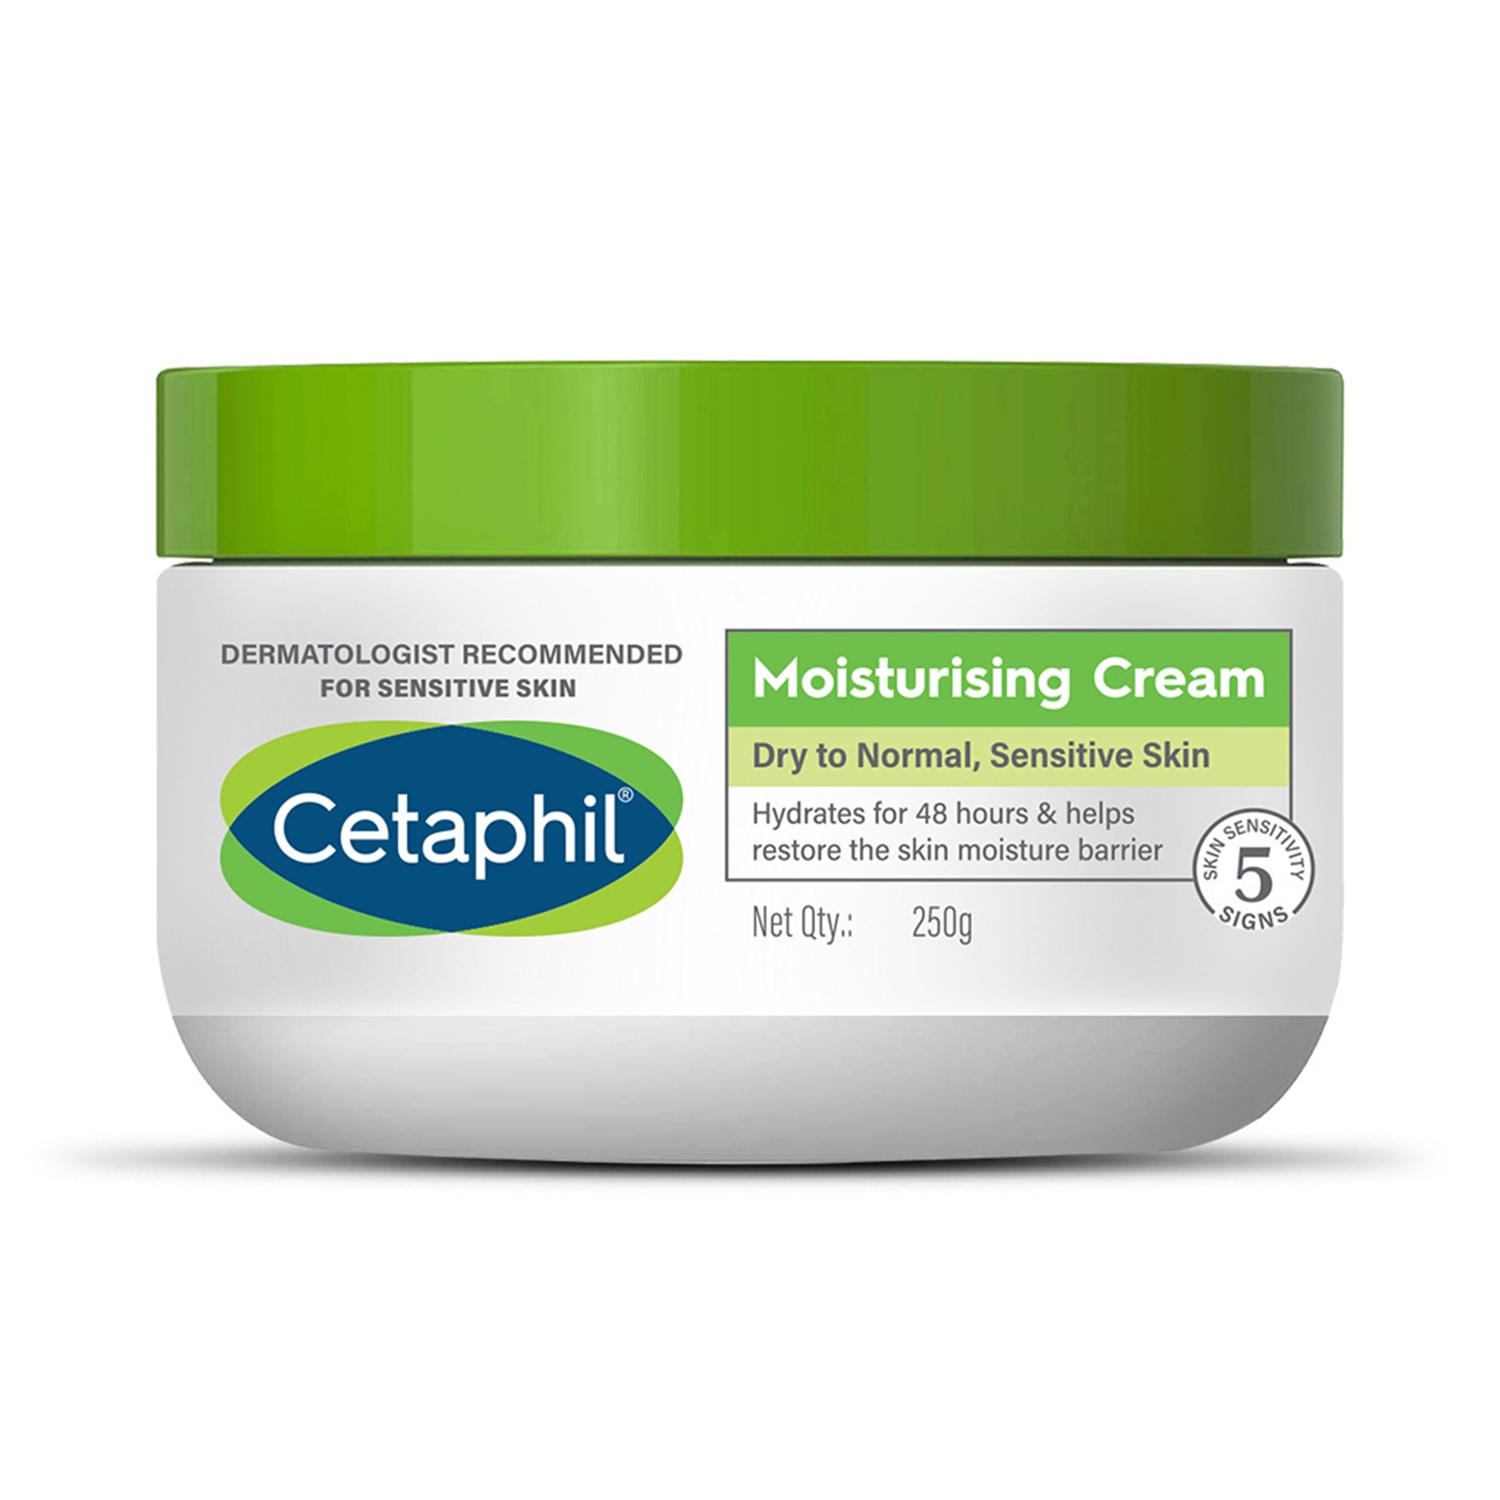 Cetaphil Moisturising Cream (250g)